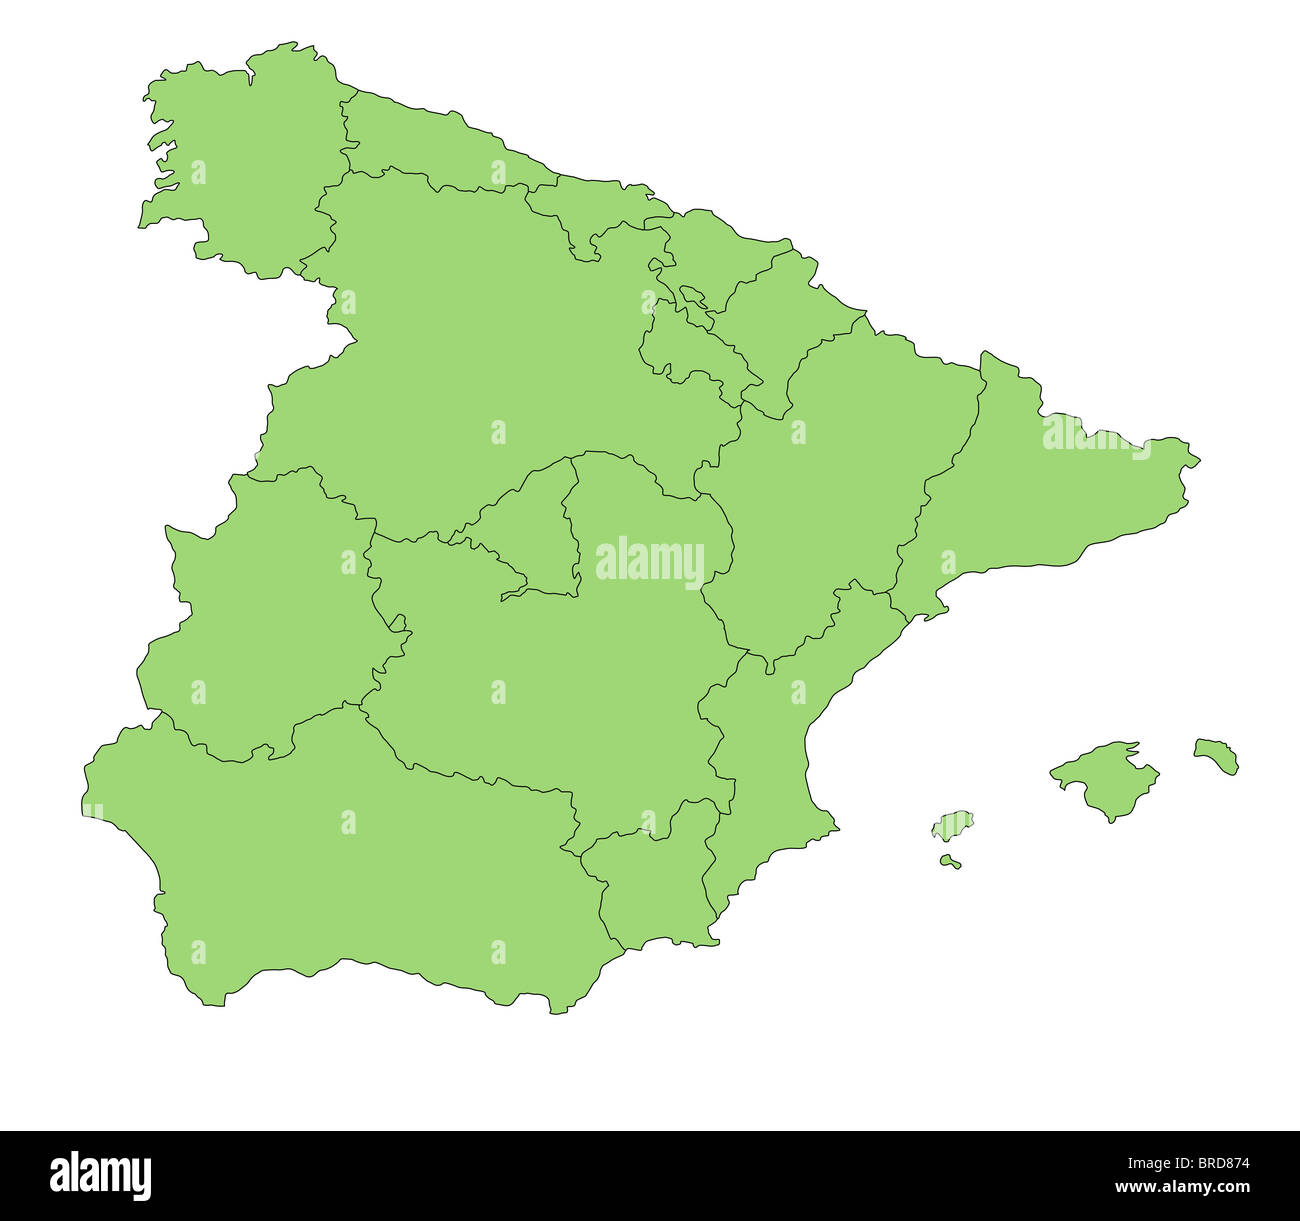 Una mappa stilizzata della Spagna che mostra le diverse province. Foto Stock